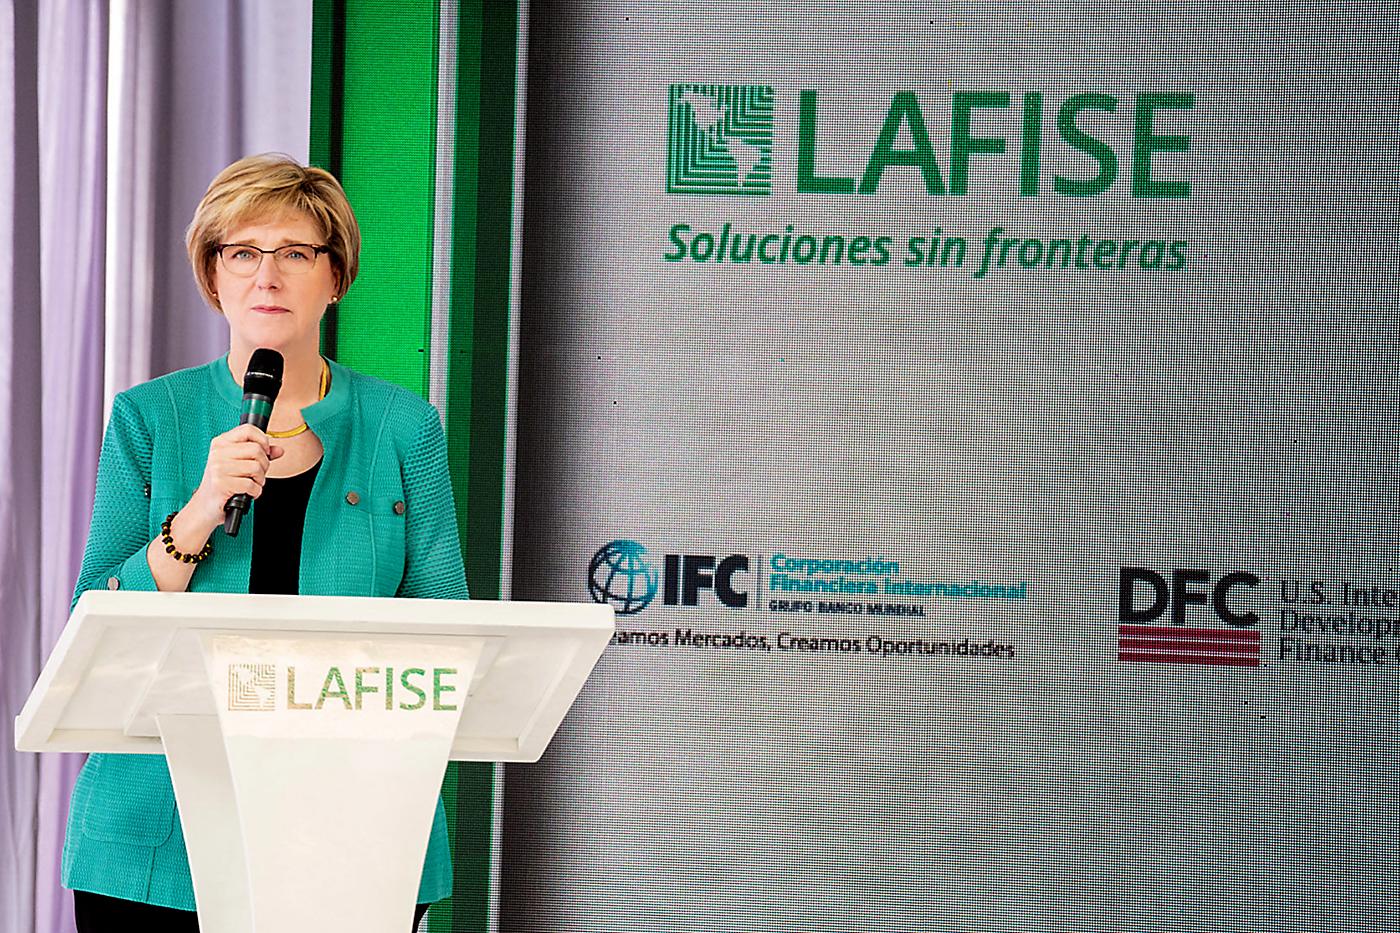 LAFISE y Fundación Zamora Terán lanzan programa destinado a fomentar el Desarrollo de las PYMES con Enfoque de Género